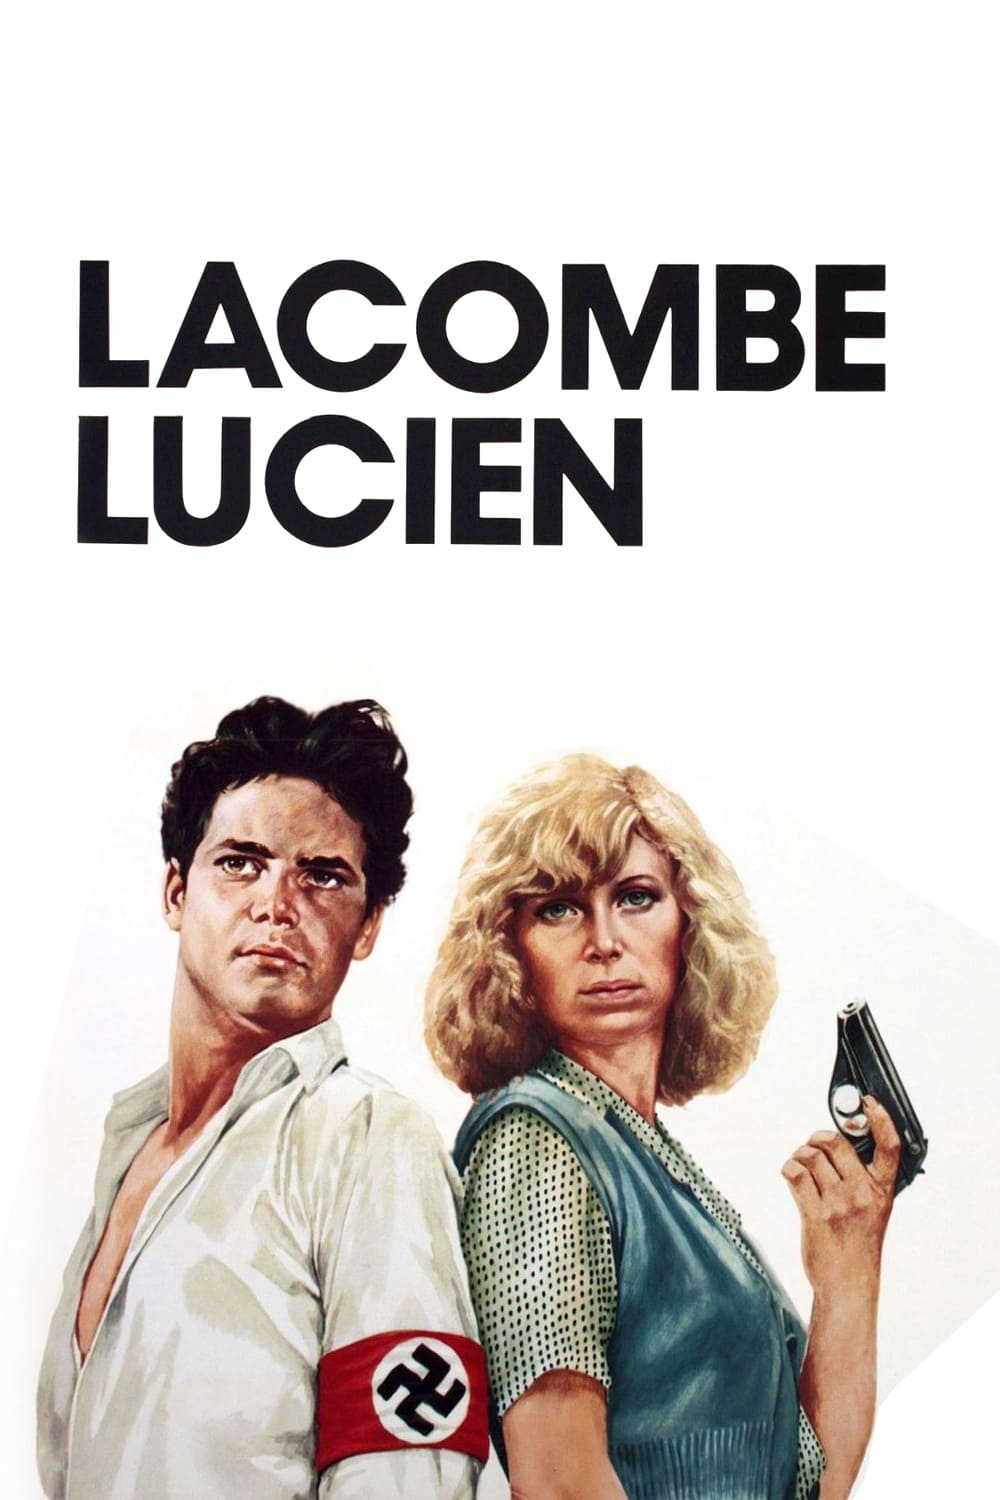 Επωνυμο: Λακομπ, Ονομα: Λισιεν / Lacombe Lucien (1974)